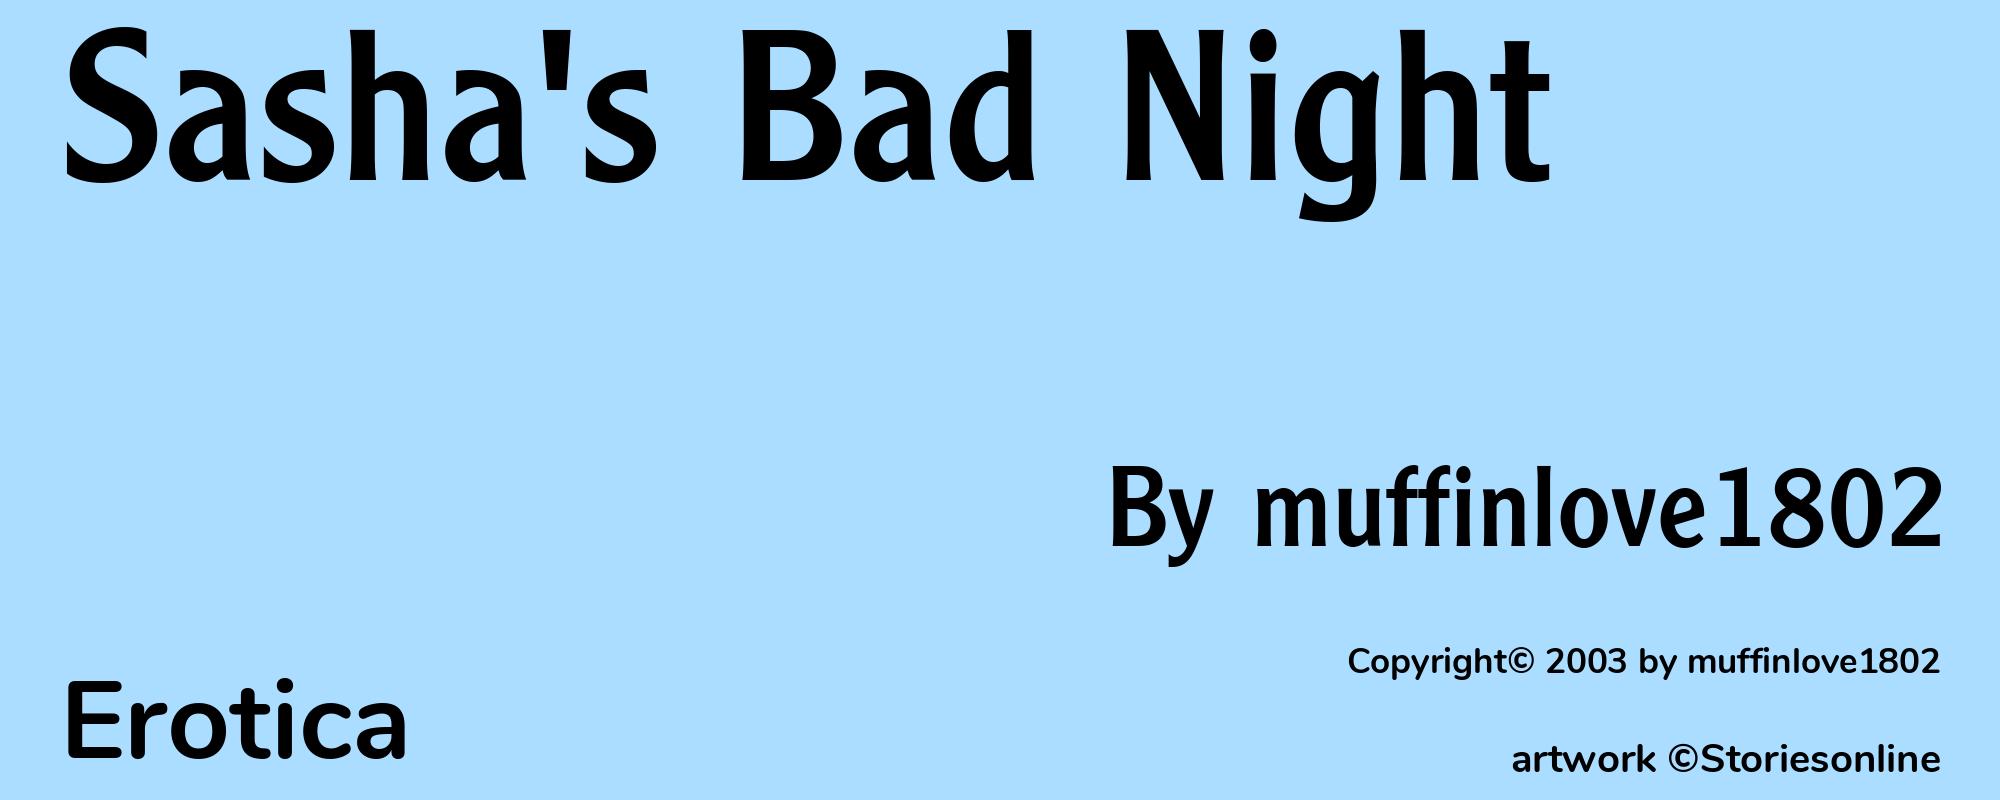 Sasha's Bad Night - Cover